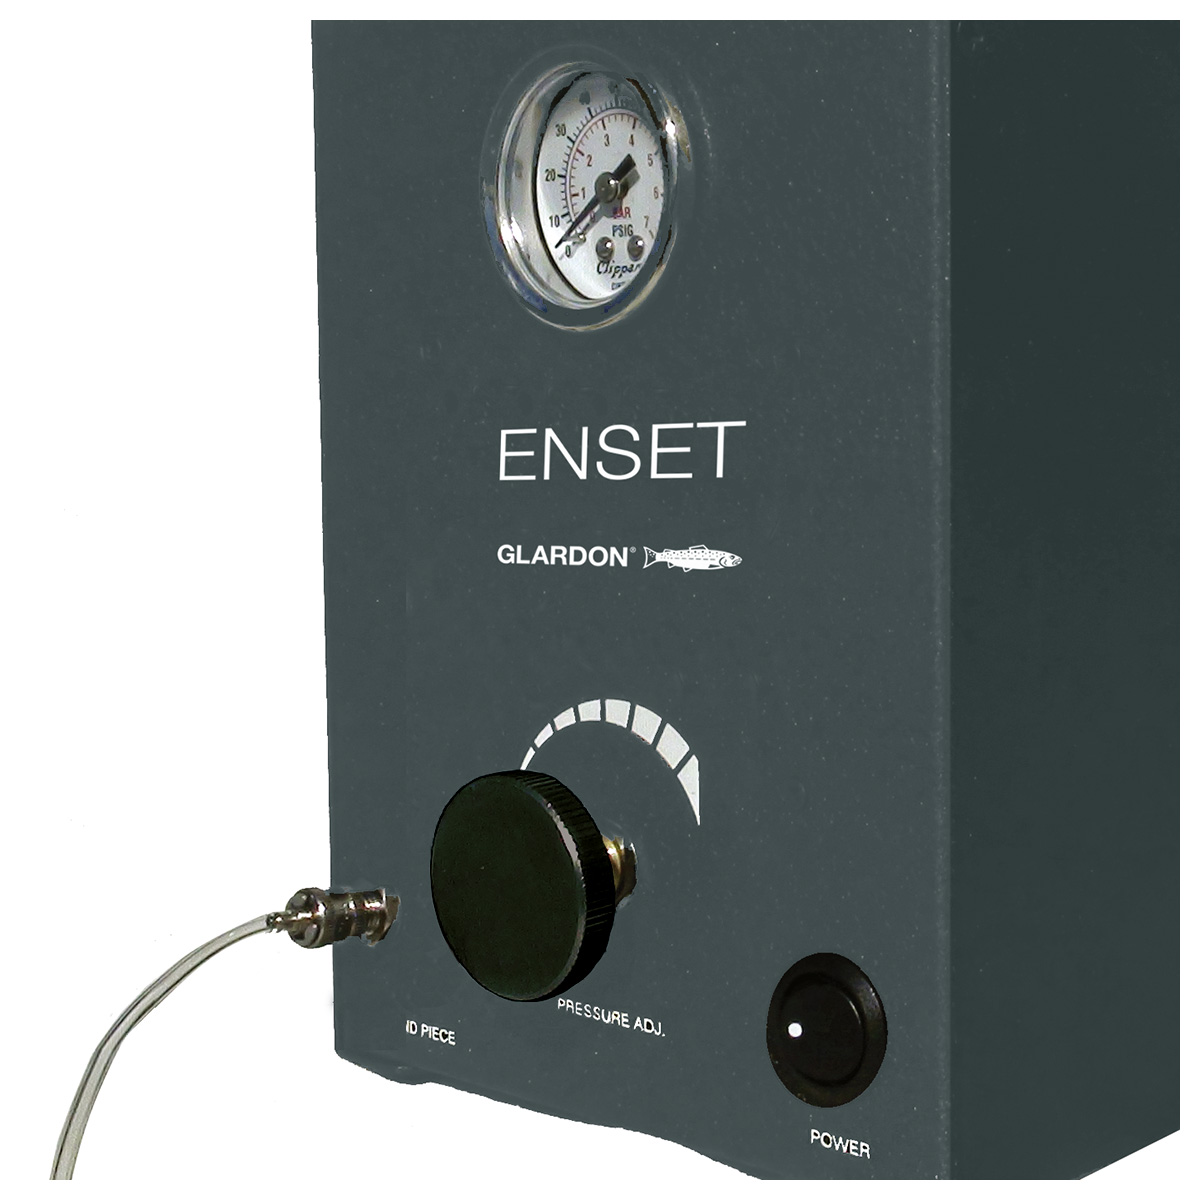 Tischsteuereinheit EnSet Compact mit Einzelanschluss, Analoganzeige, Frequenz bis 1500 Schläge/Min.
